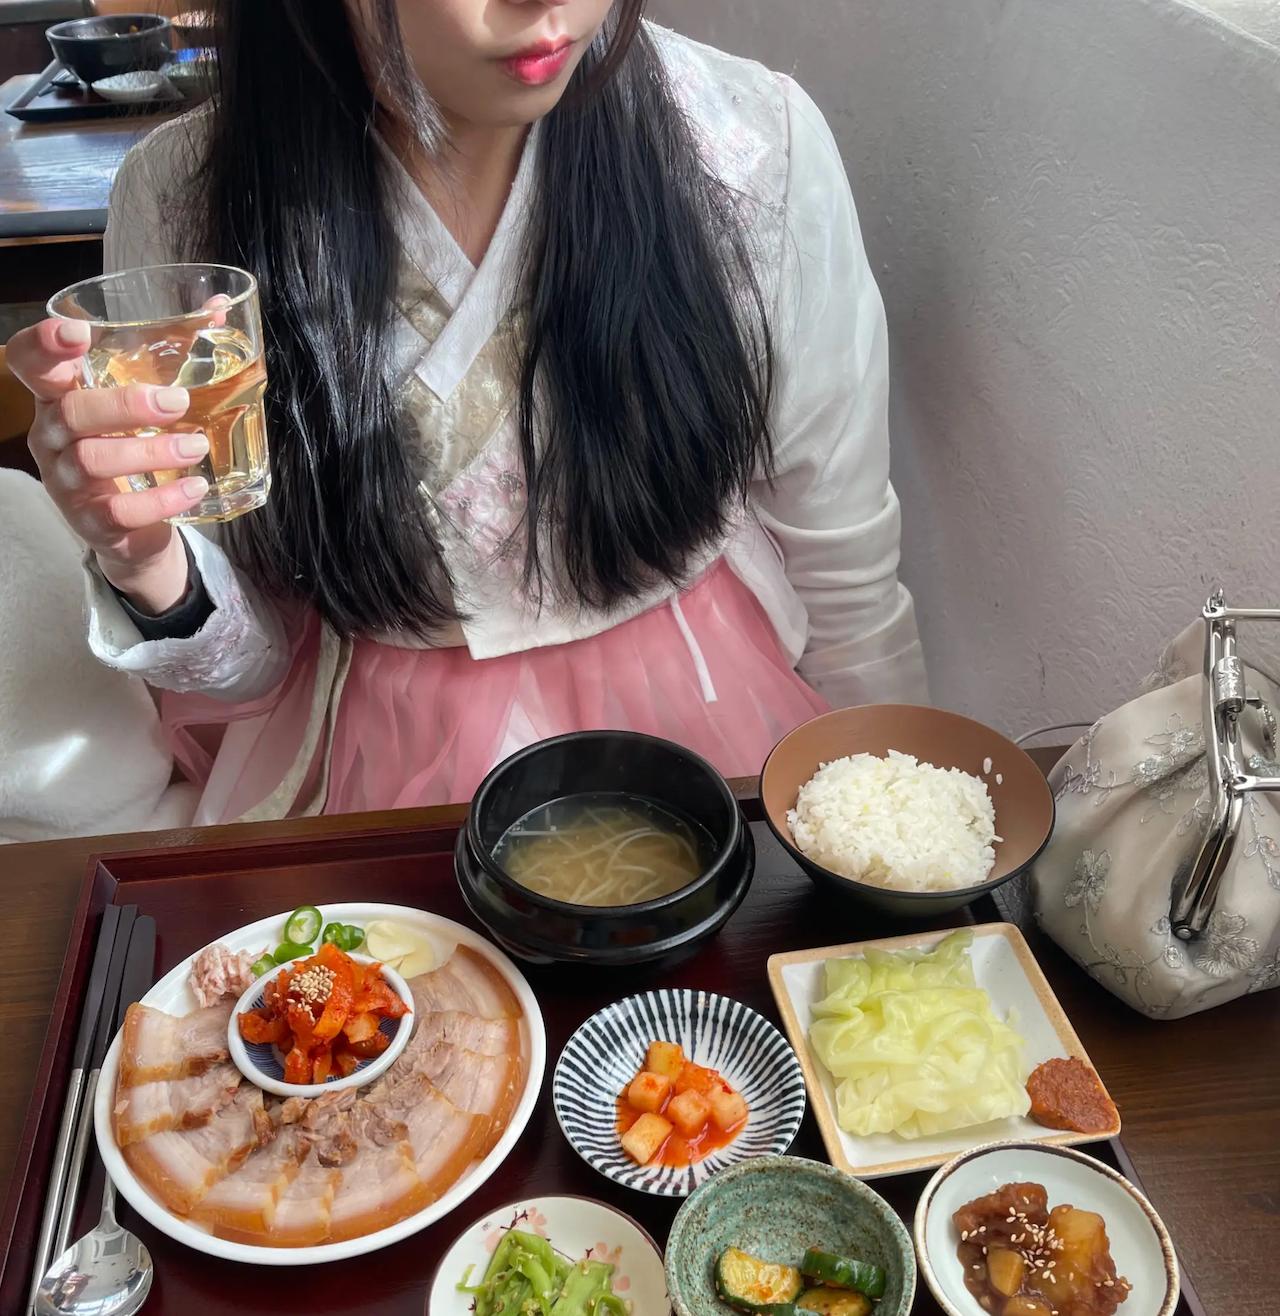 ソウル料理 | 景福宮 北村韓屋村 絶対に試すべき人気の豚バラ肉